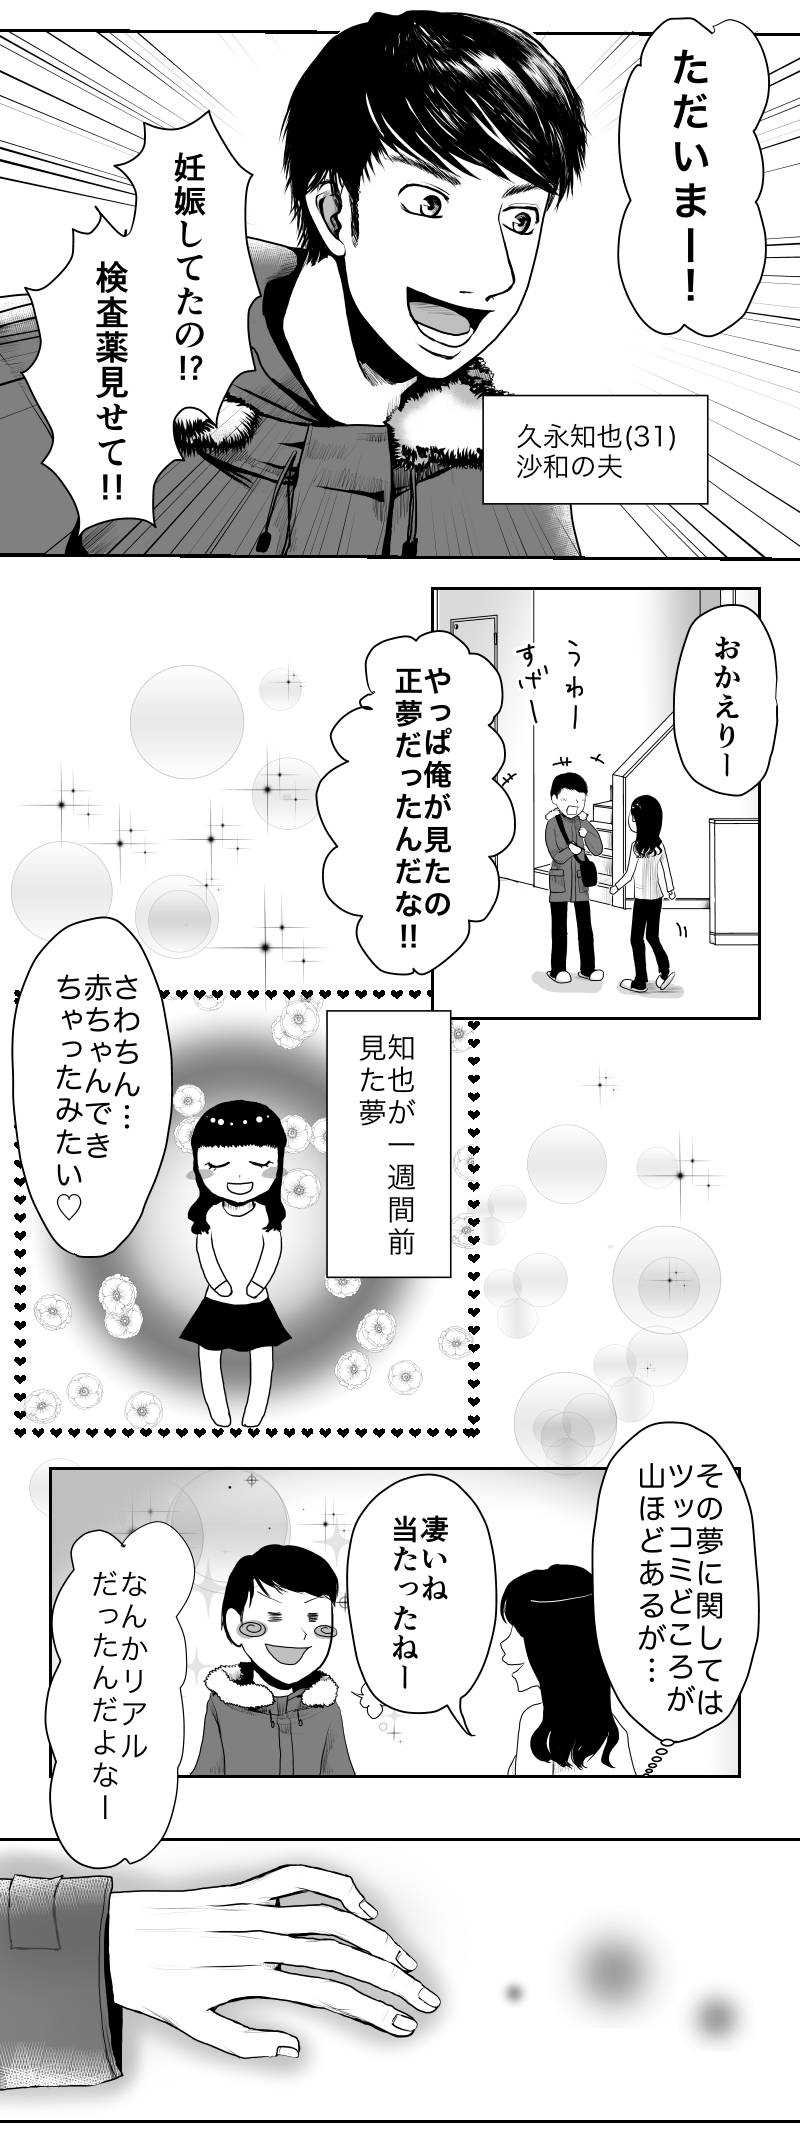 久永家〜妊娠出産がわかるエッセイ漫画〜 第1話